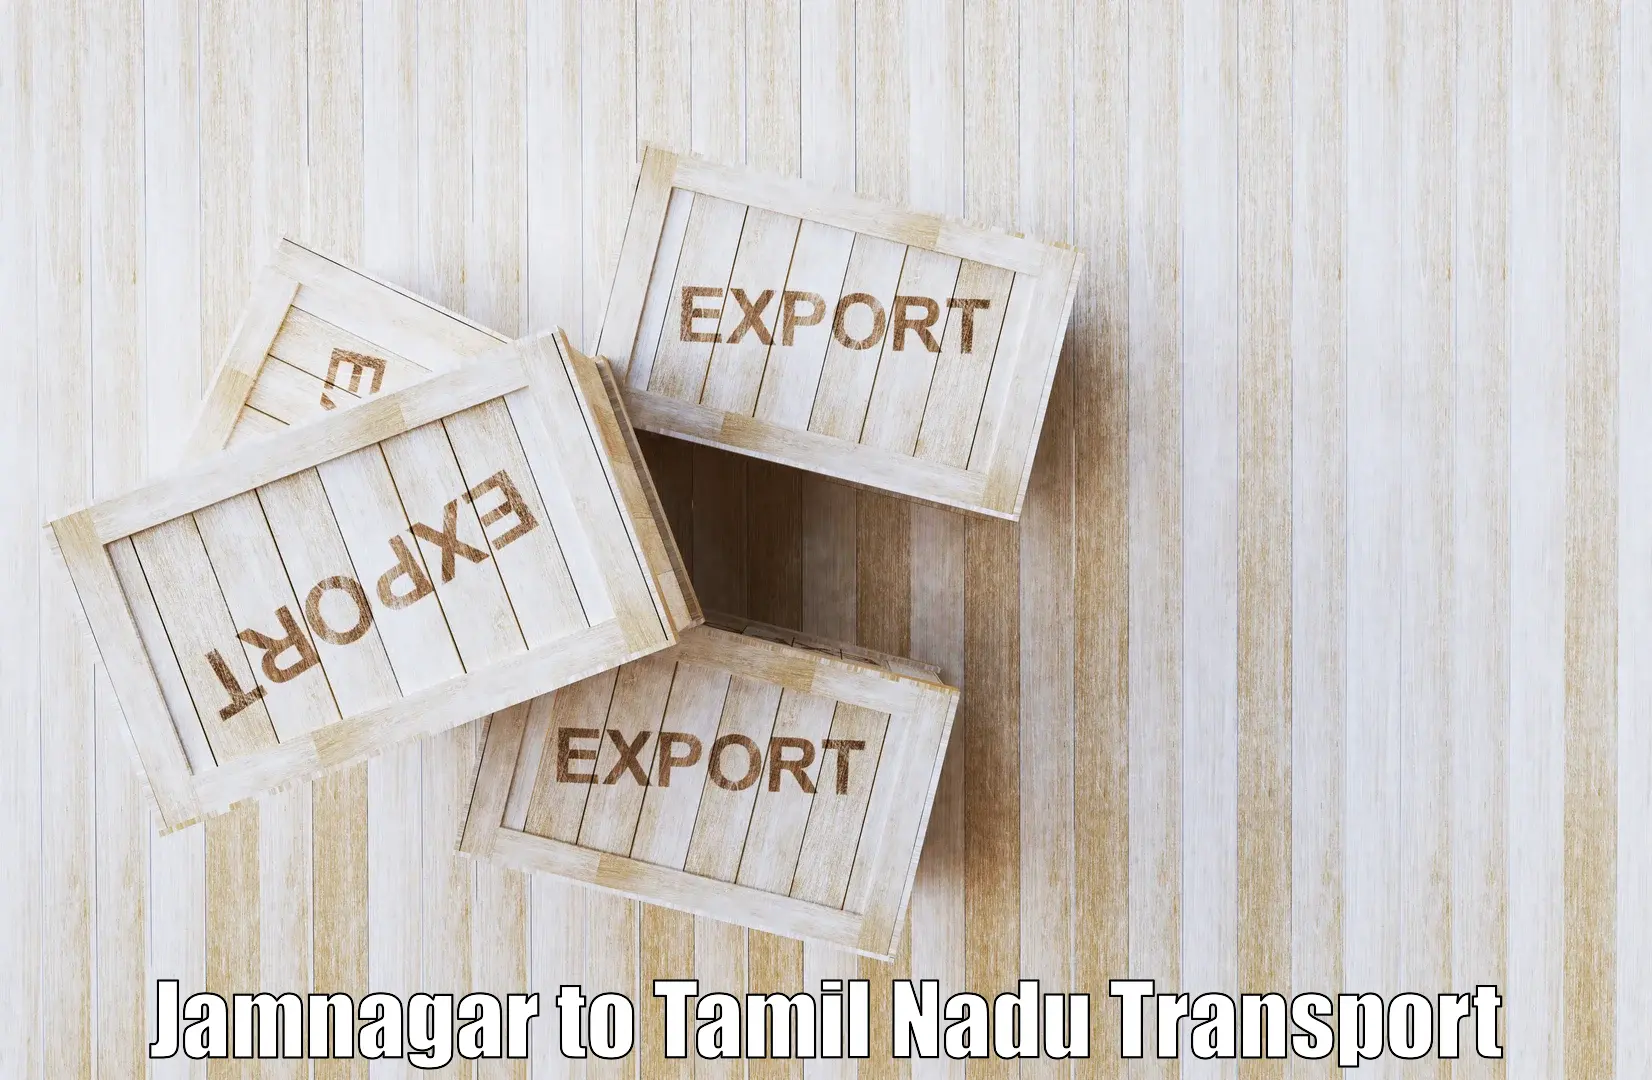 Container transportation services Jamnagar to Suramangalam